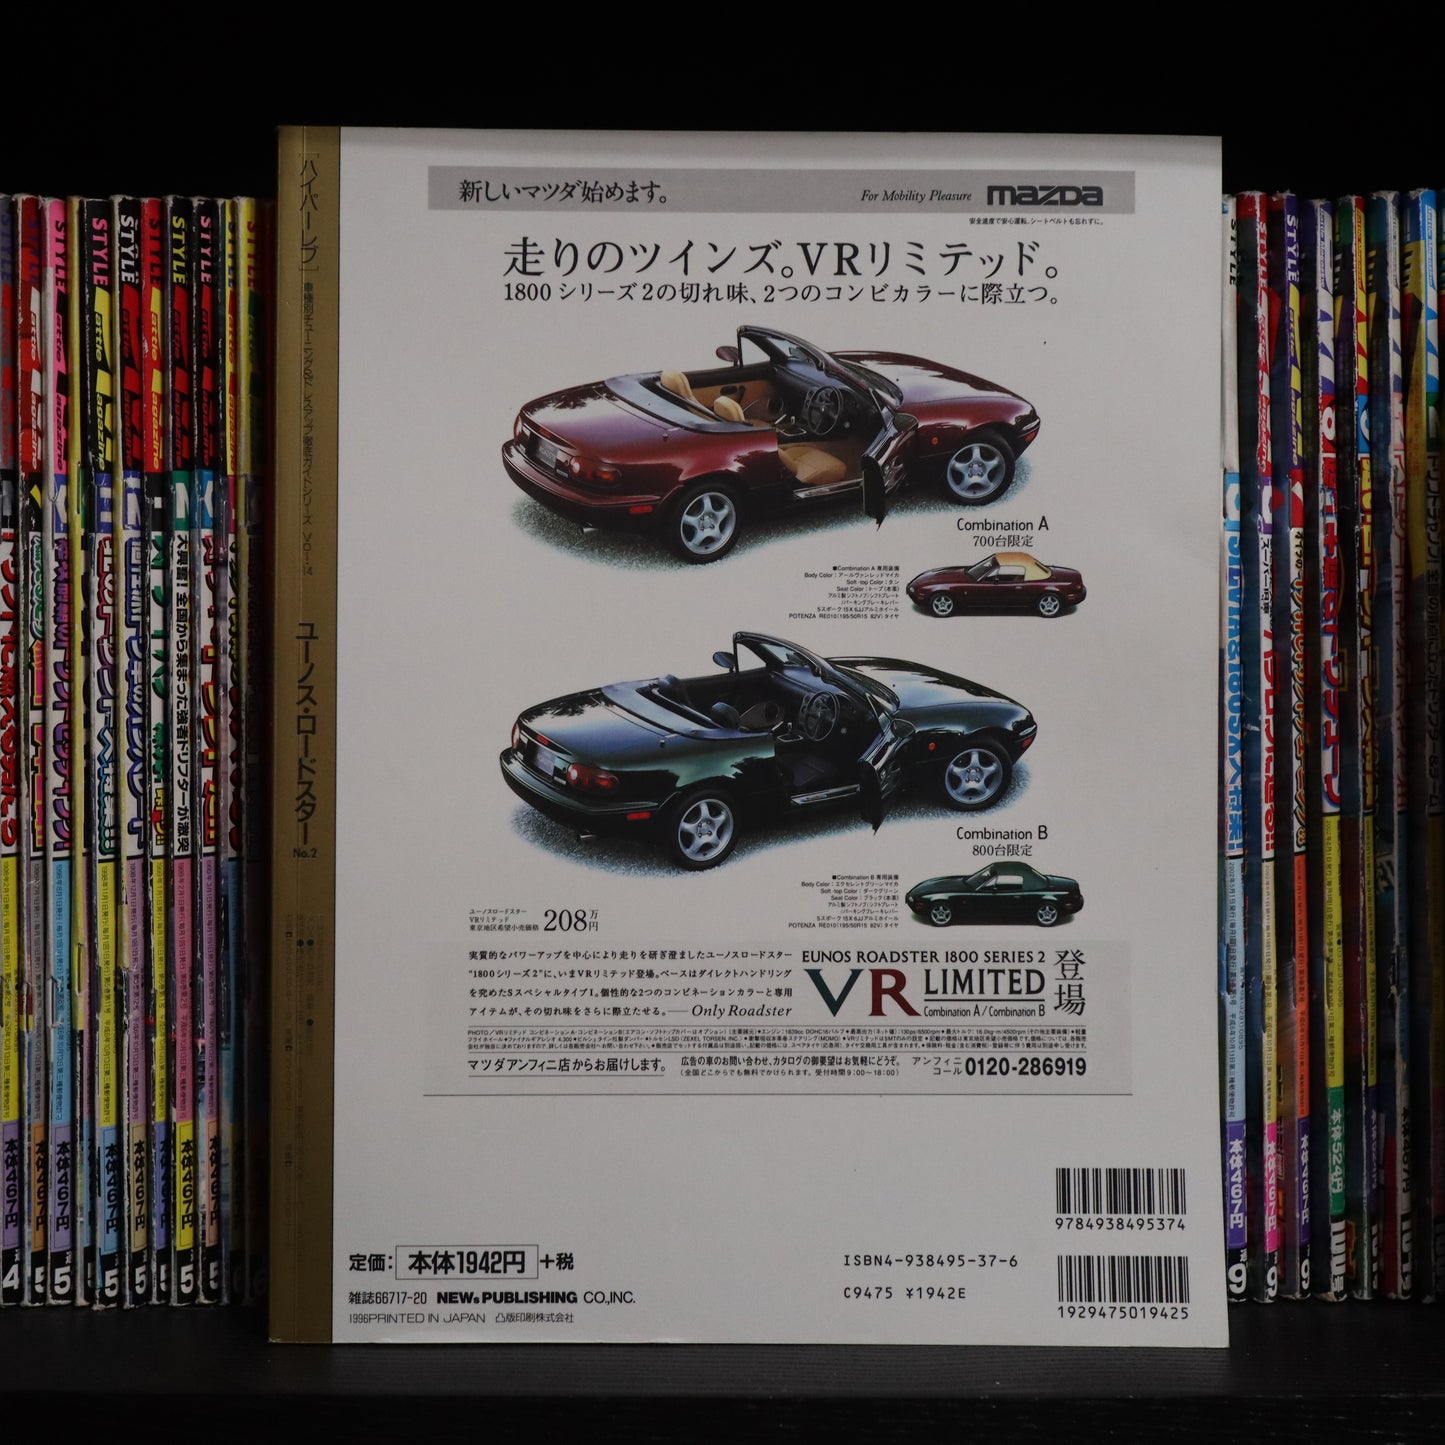 Hyper Rev Mazda Roadster Volume 51 no.3